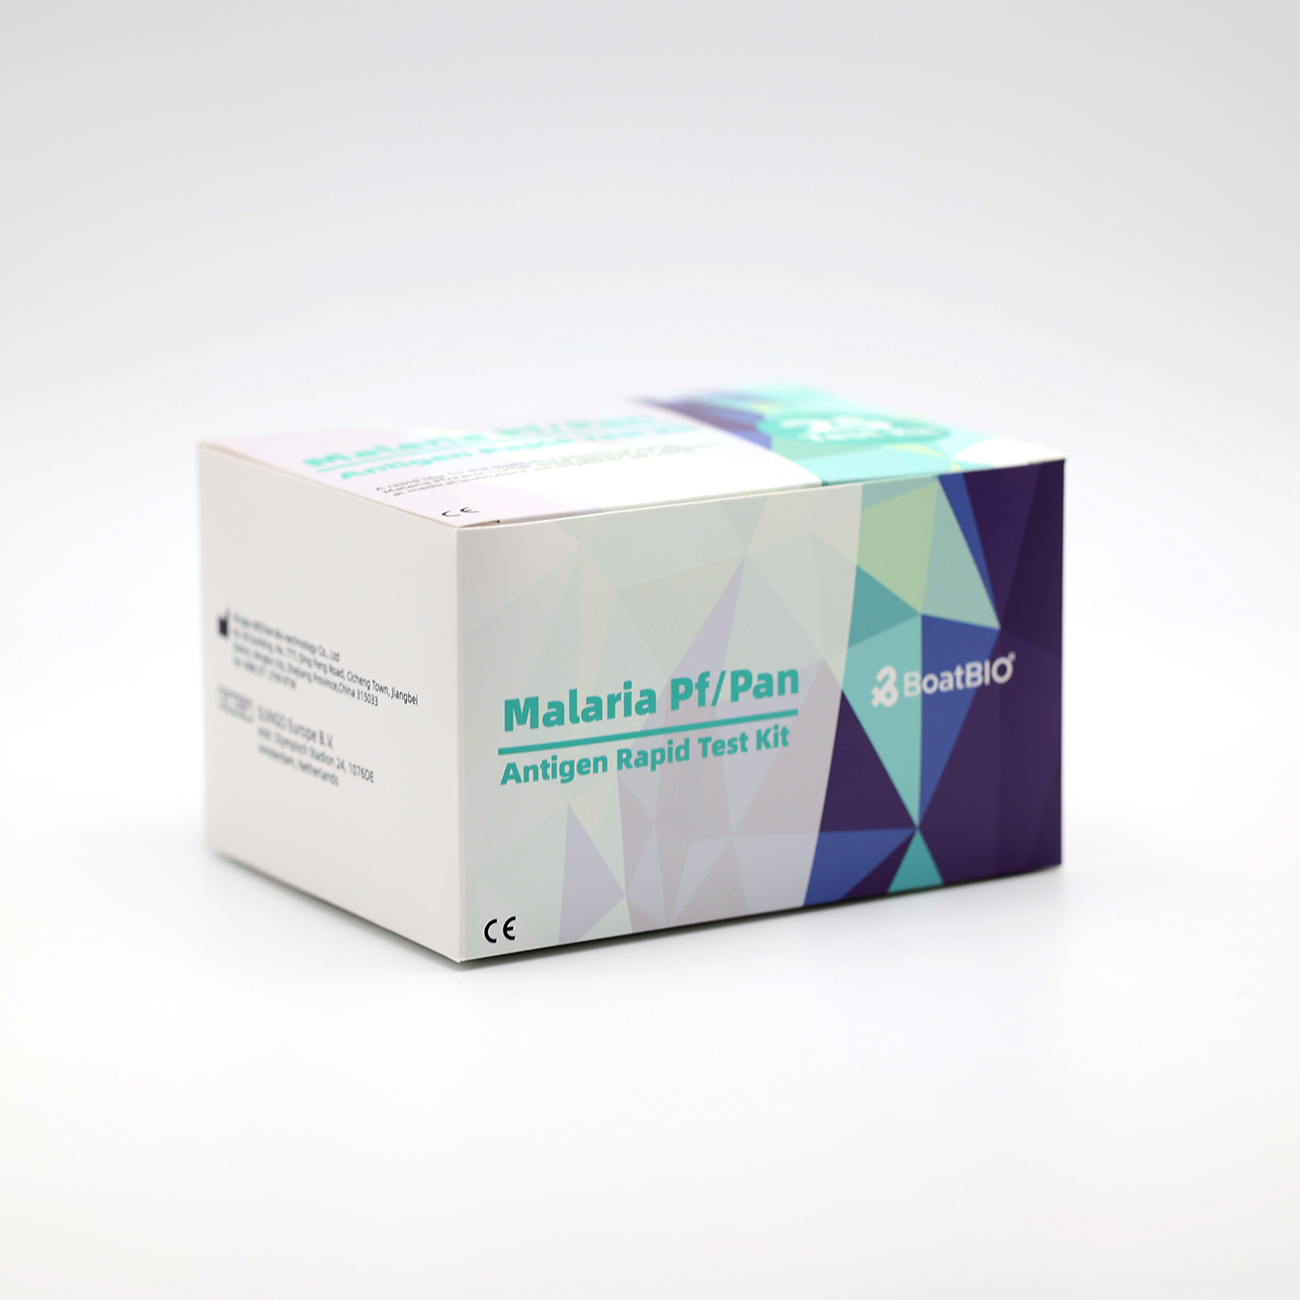 Malaria Pf/Pan Antigen Rapid Test Kit (Kolloidal Qızıl)